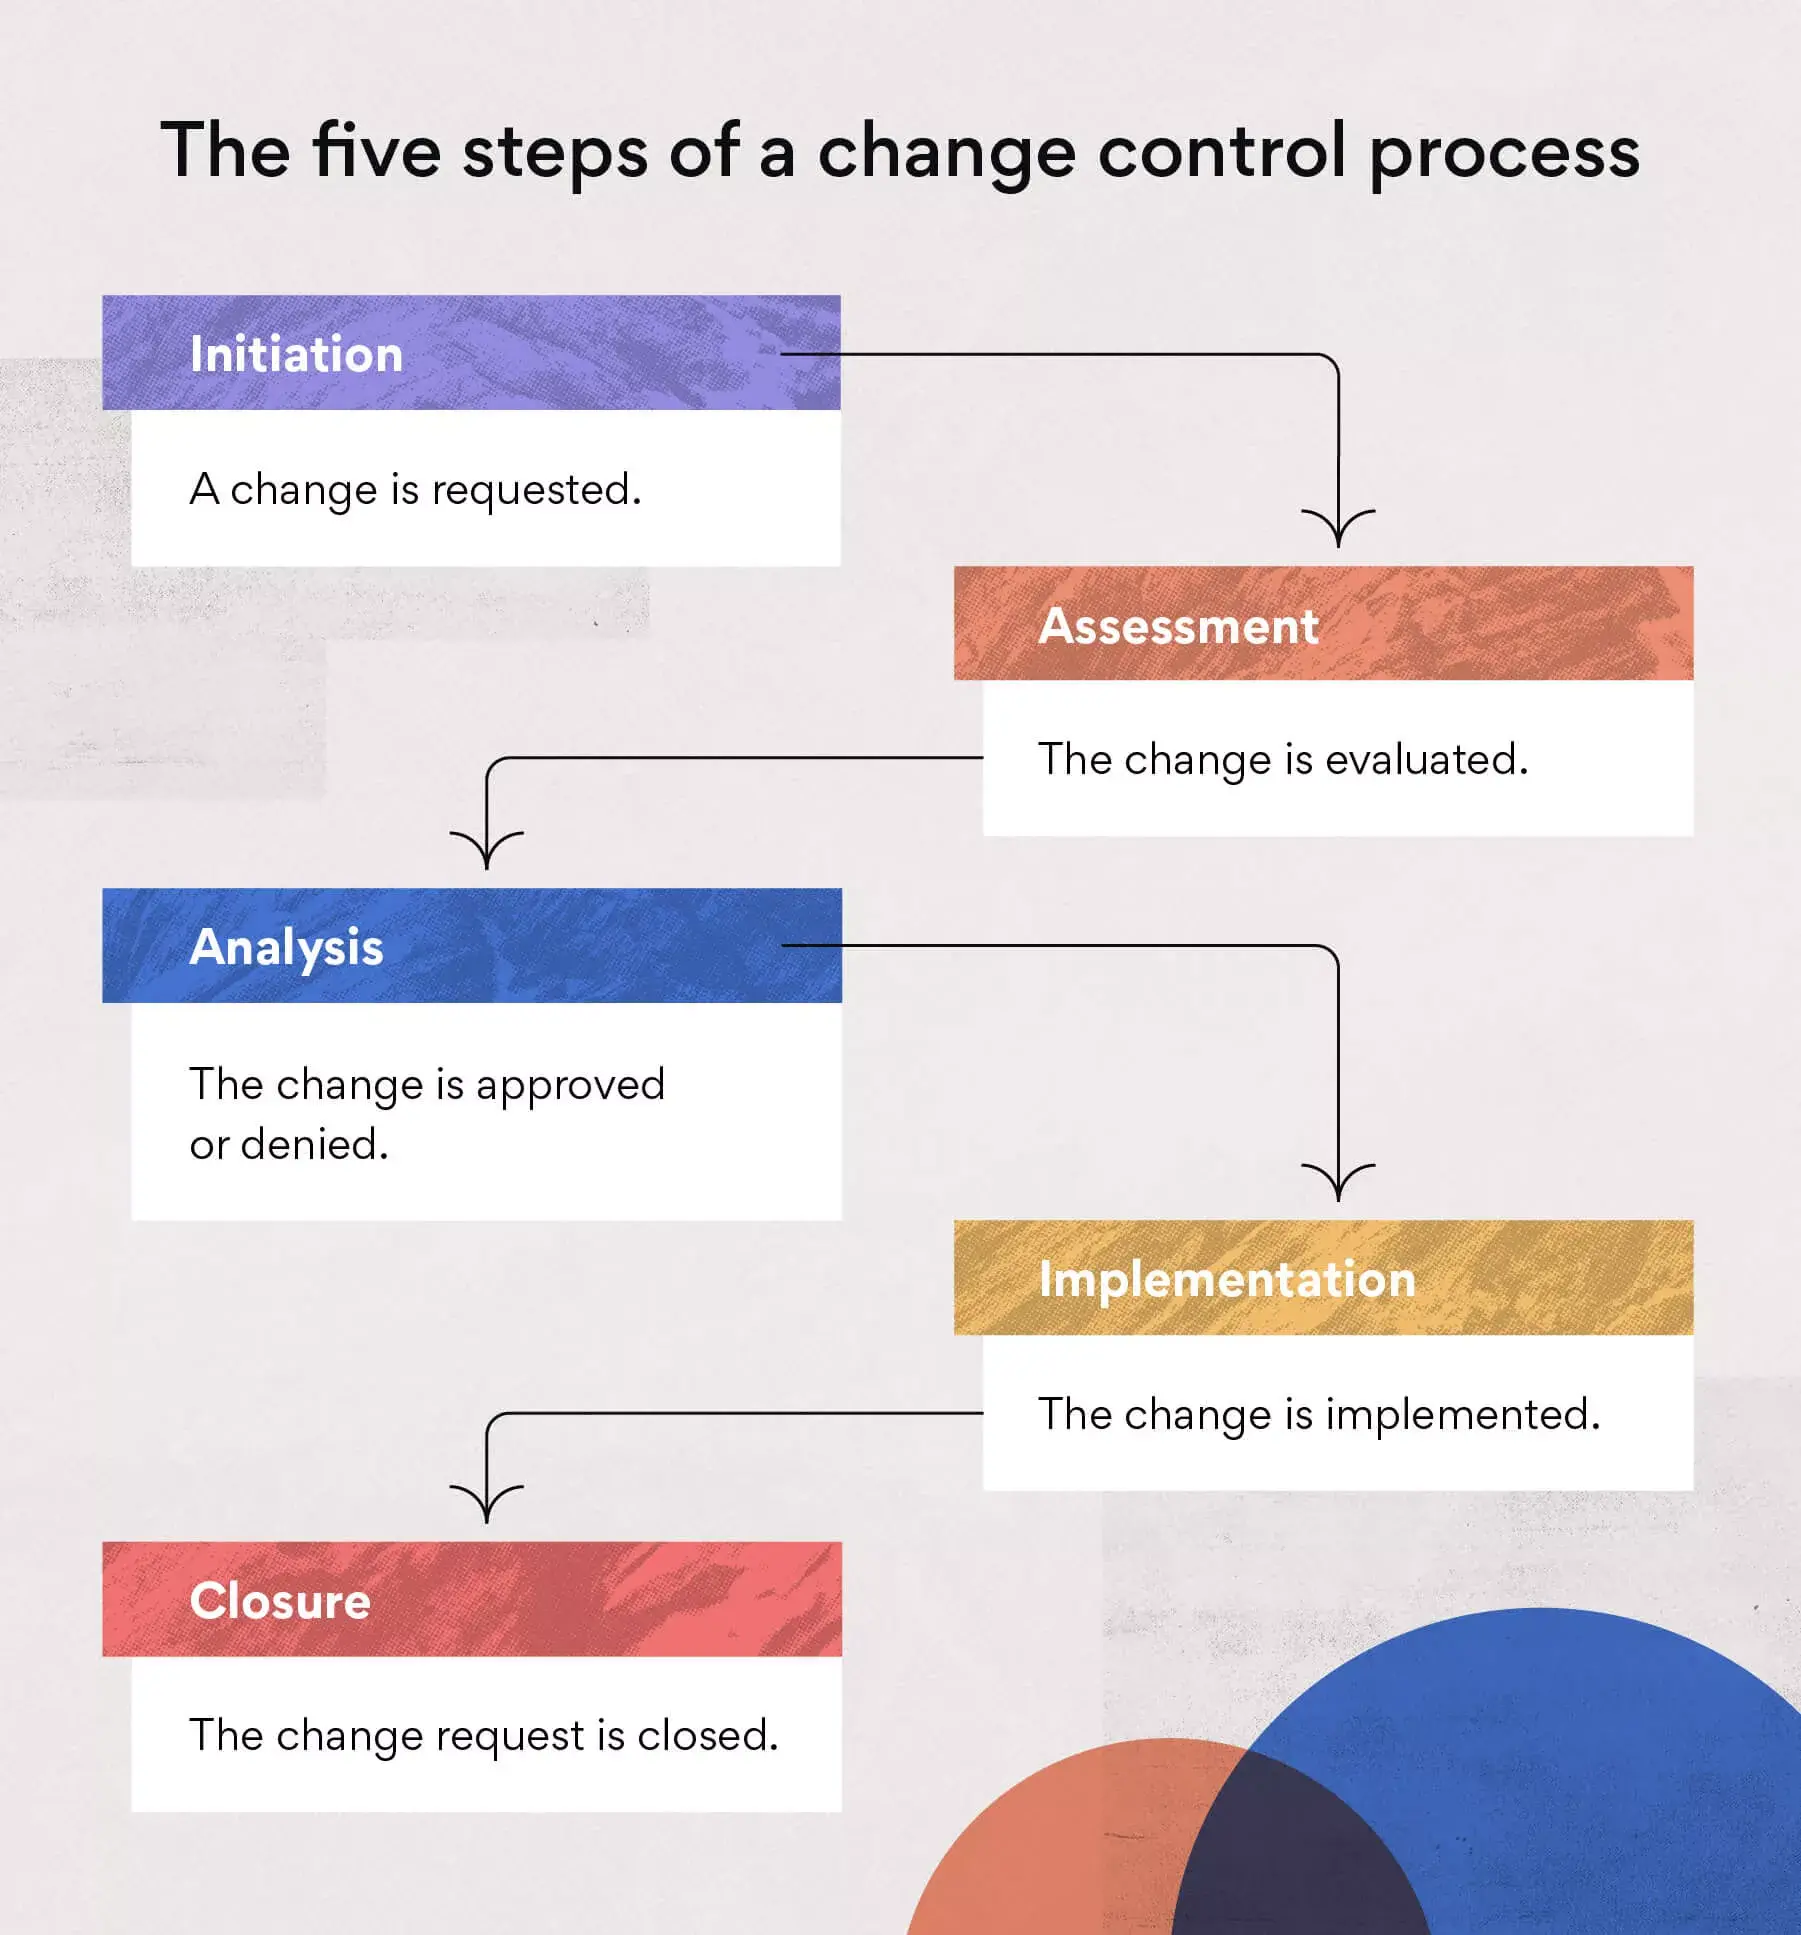 Lima langkah proses kontrol perubahan